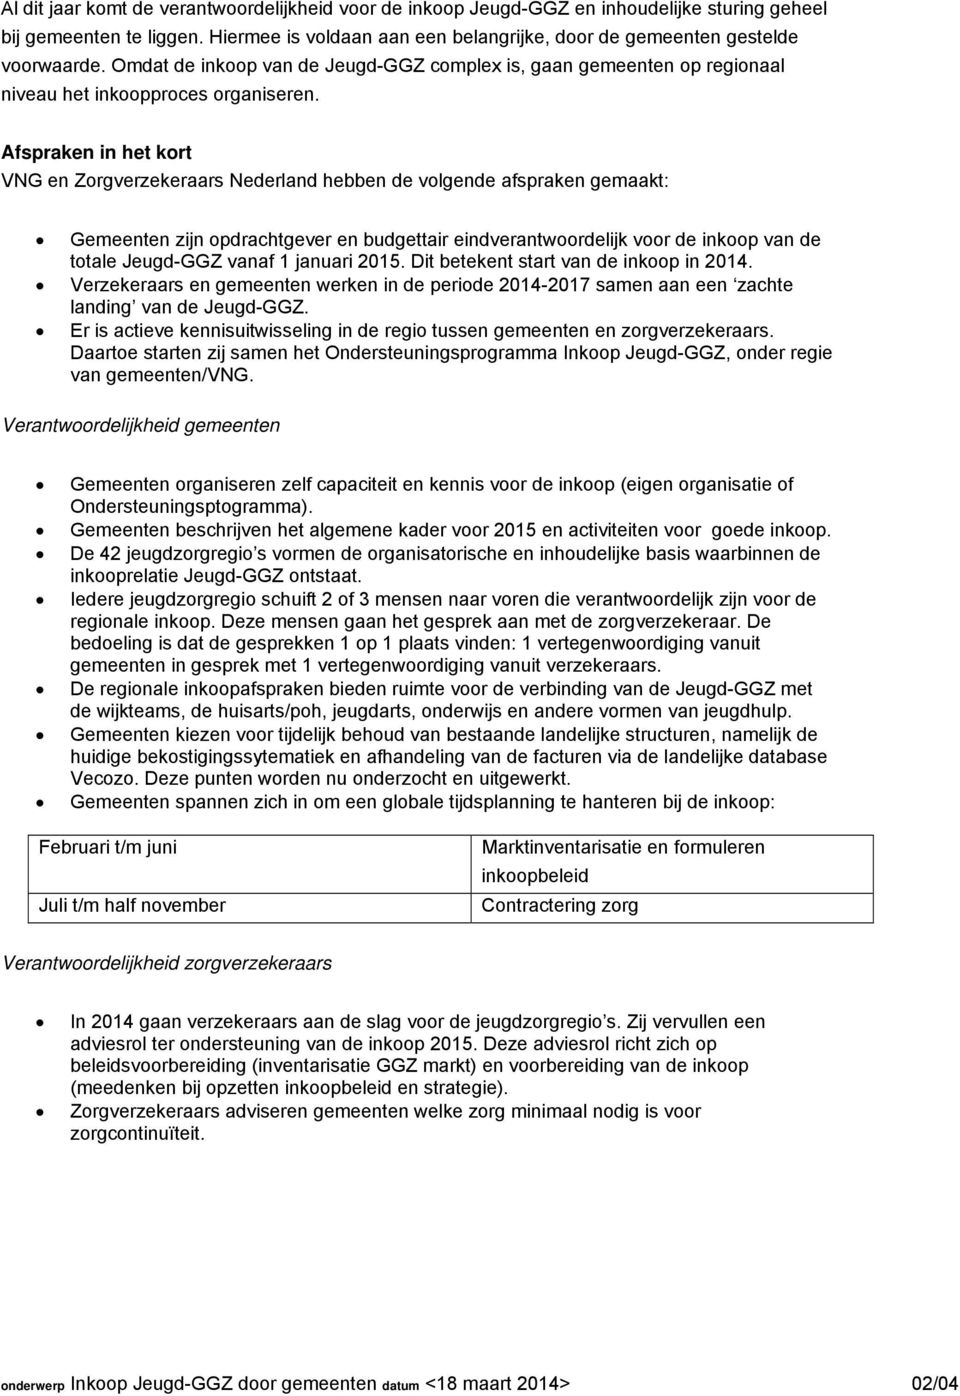 Afspraken in het kort VNG en Zorgverzekeraars Nederland hebben de volgende afspraken gemaakt: Gemeenten zijn opdrachtgever en budgettair eindverantwoordelijk voor de inkoop van de totale Jeugd-GGZ